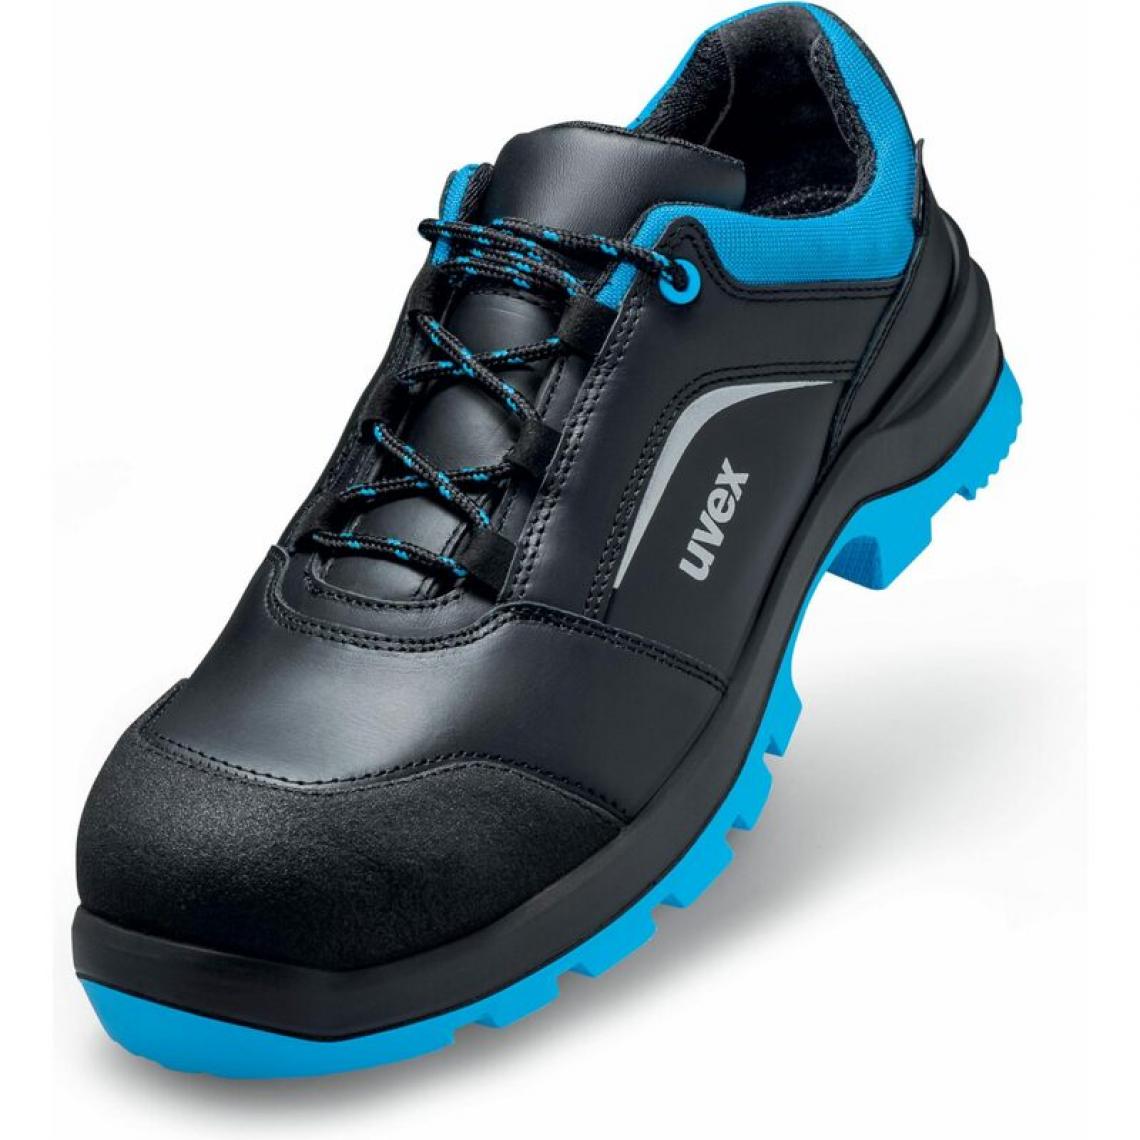 Uvex - uvex 2 xenova Chaussures basses S3 SRC, T. 45, noir/bleu () - Equipement de Protection Individuelle